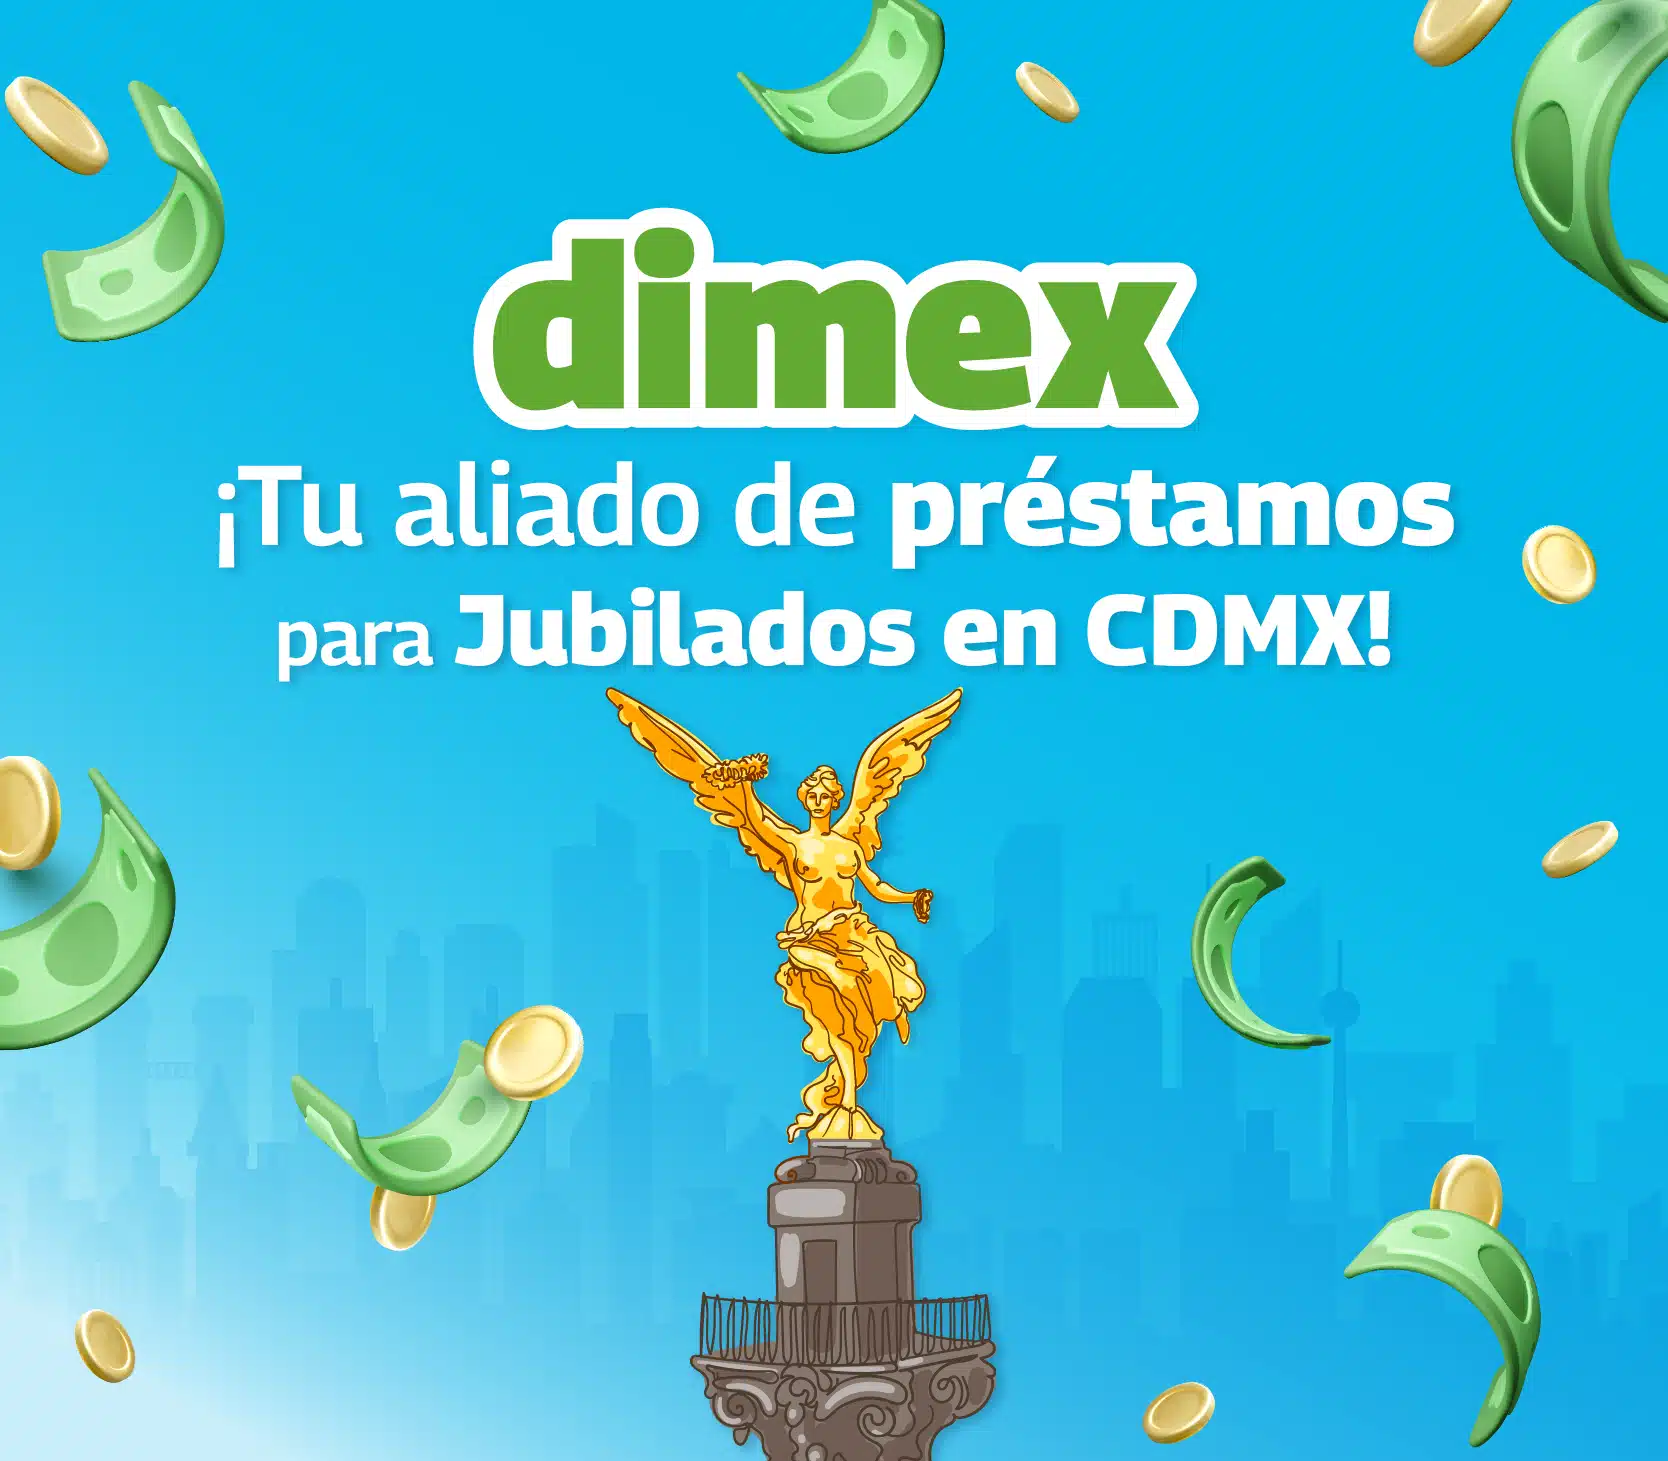 ¿Estás buscando préstamos personales para jubilados en cdmx? Dimex es tu aliado financiero, conoce nuestras 18 sucursales en cdmx